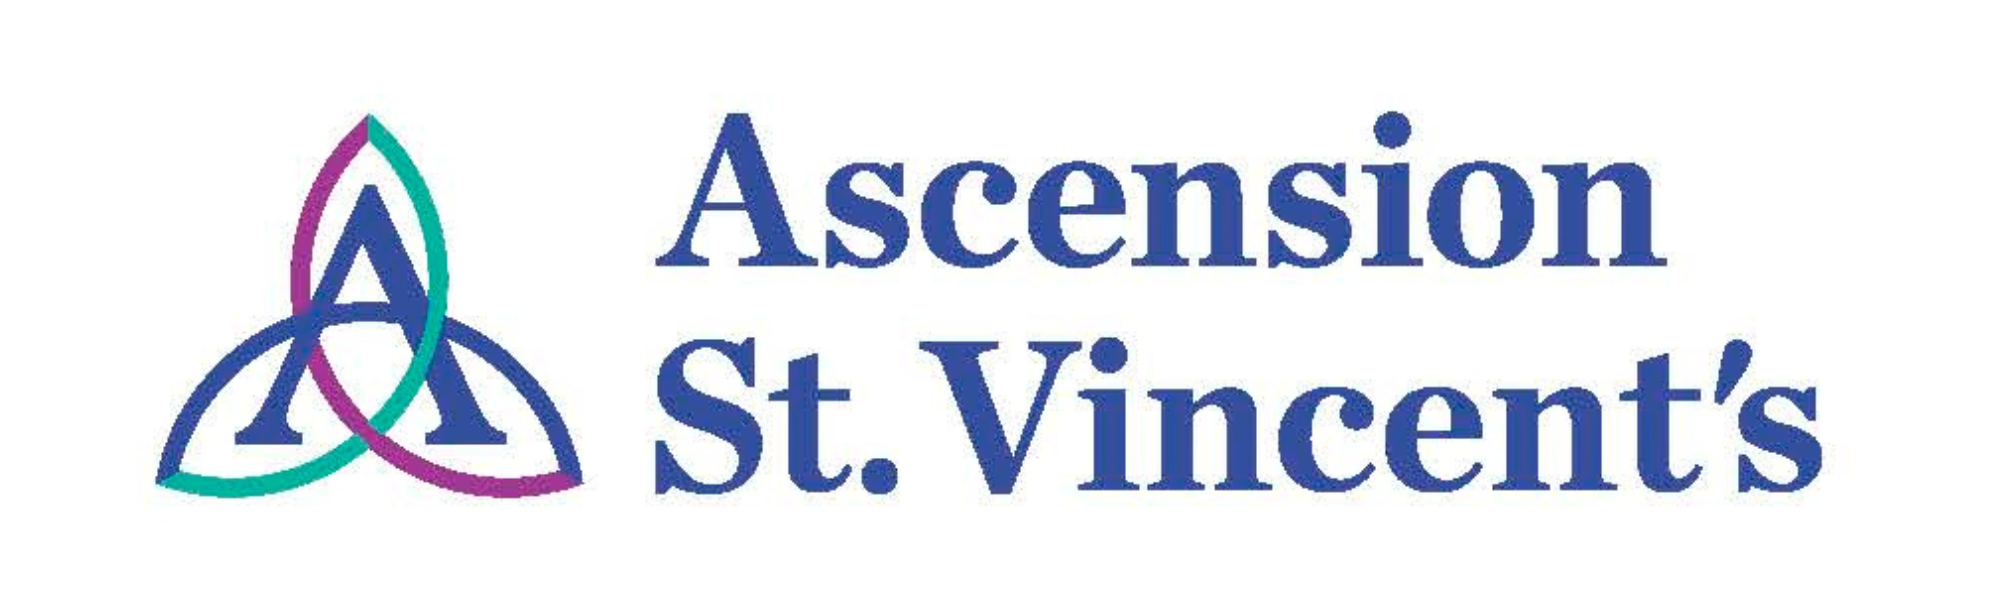 Ascension St. Vincent's Hospital